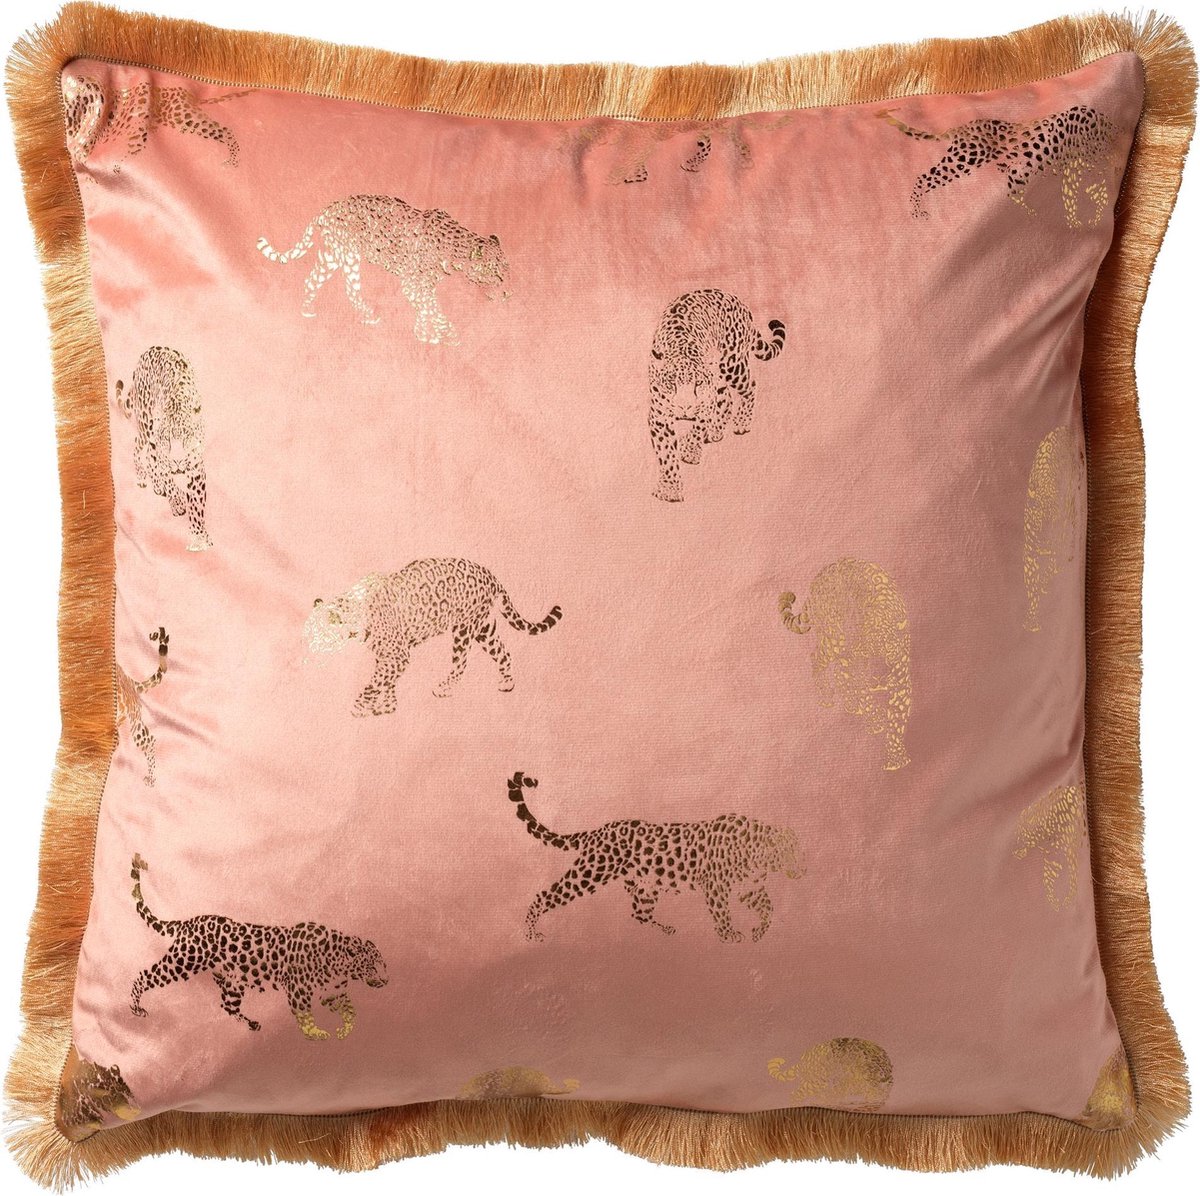 BOAN - Cushion Dusty Pink 45x45 cm